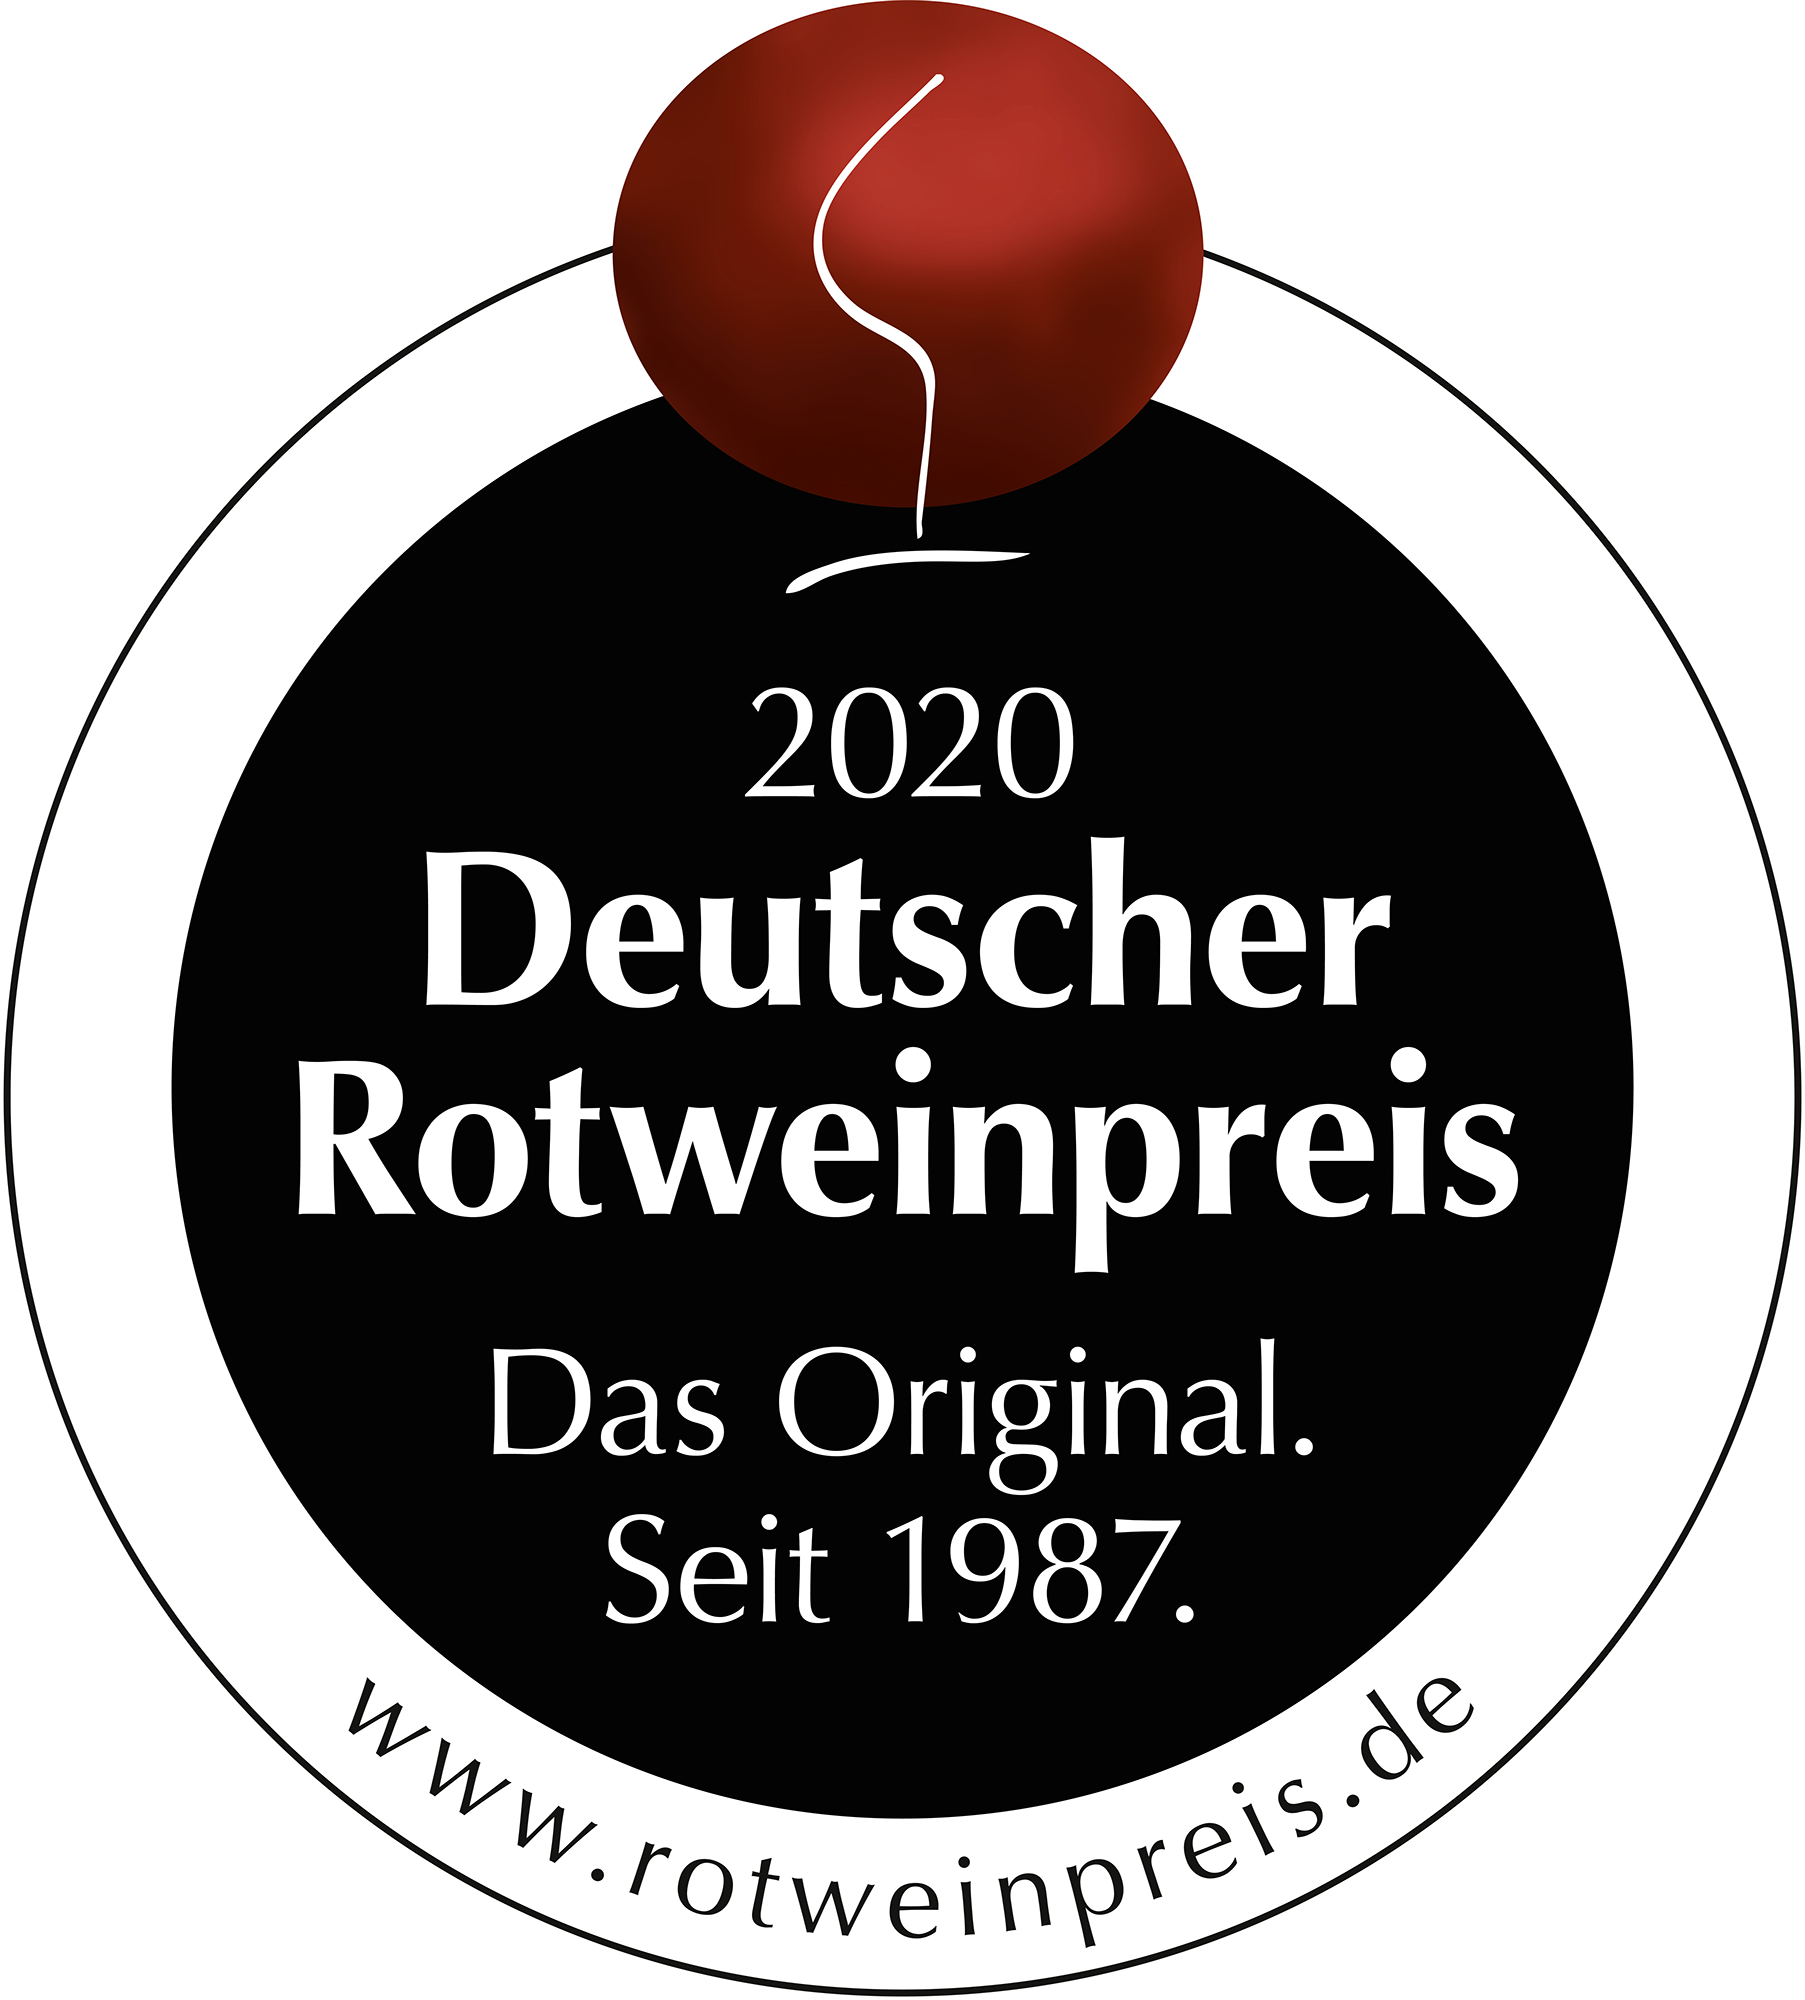 Bild-Auszeichnung: Finalist Rotweinpreis 2020